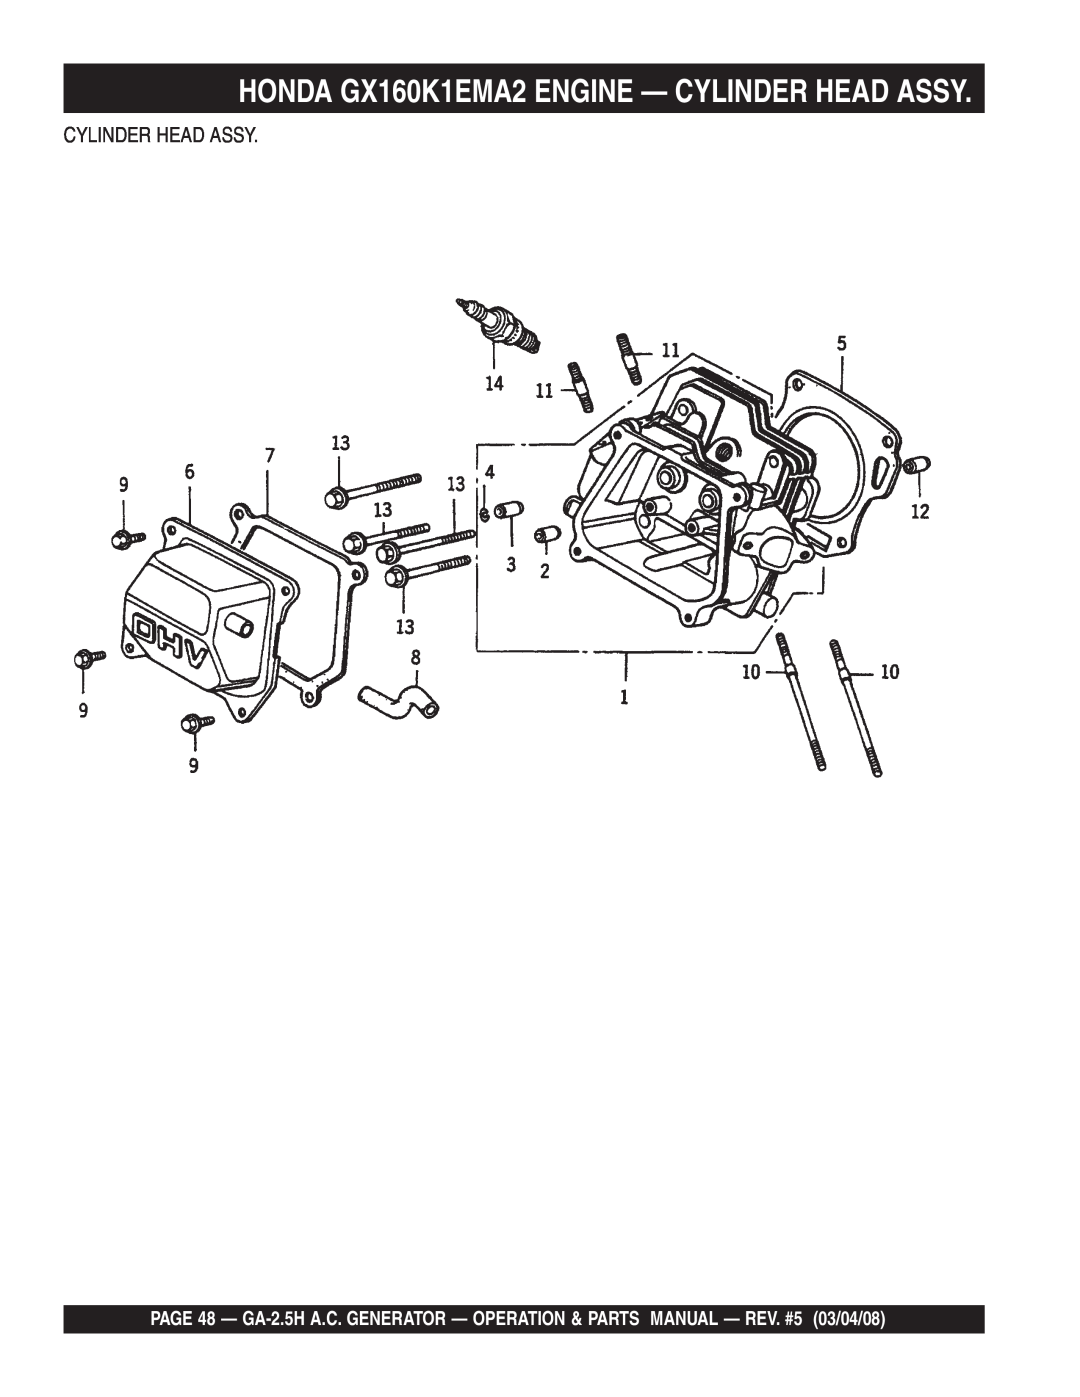 Multiquip GA-2.5H manual HONDA GX160K1EMA2 ENGINE - CYLINDER HEAD ASSY, Cylinder Head Assy 